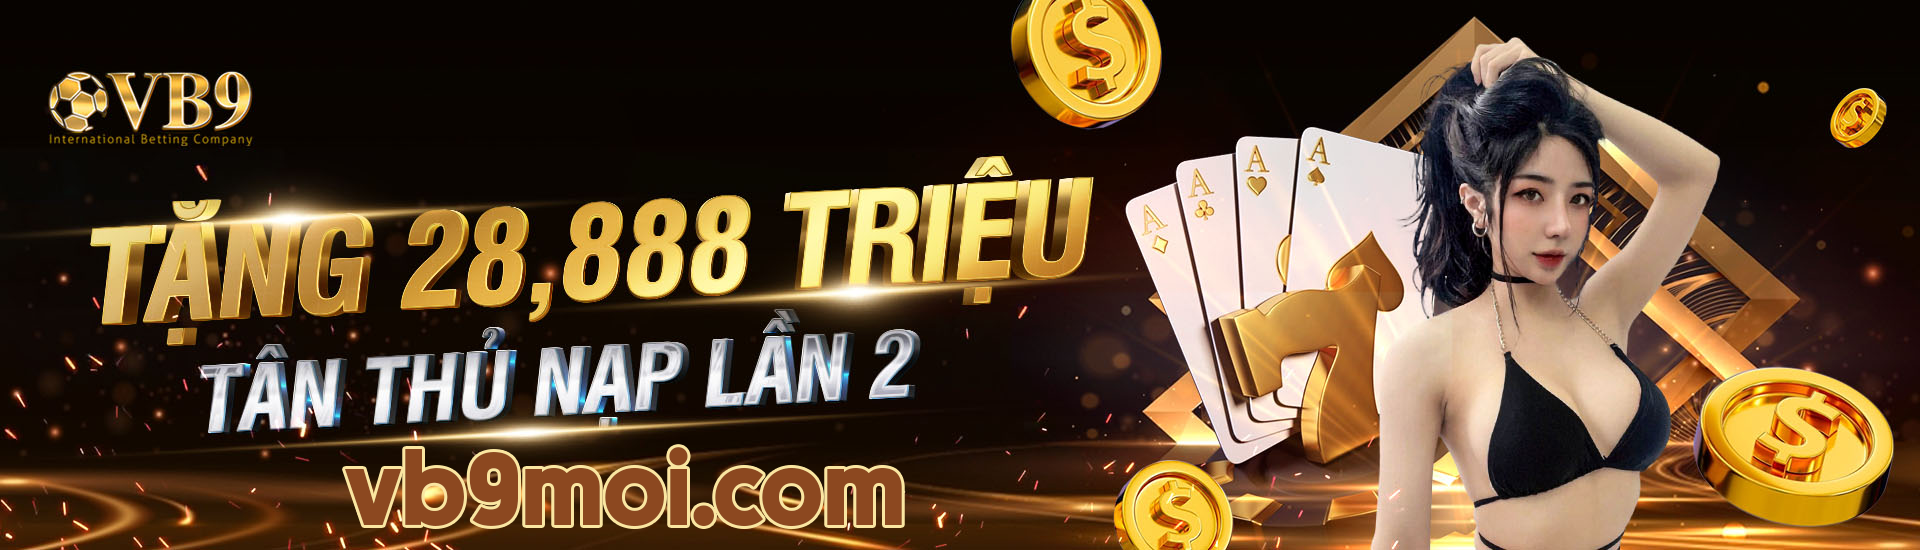 VB9 Casino - Nhà cái VB9 uy tín #1 Việt Nam, Link VB9 mới nhất